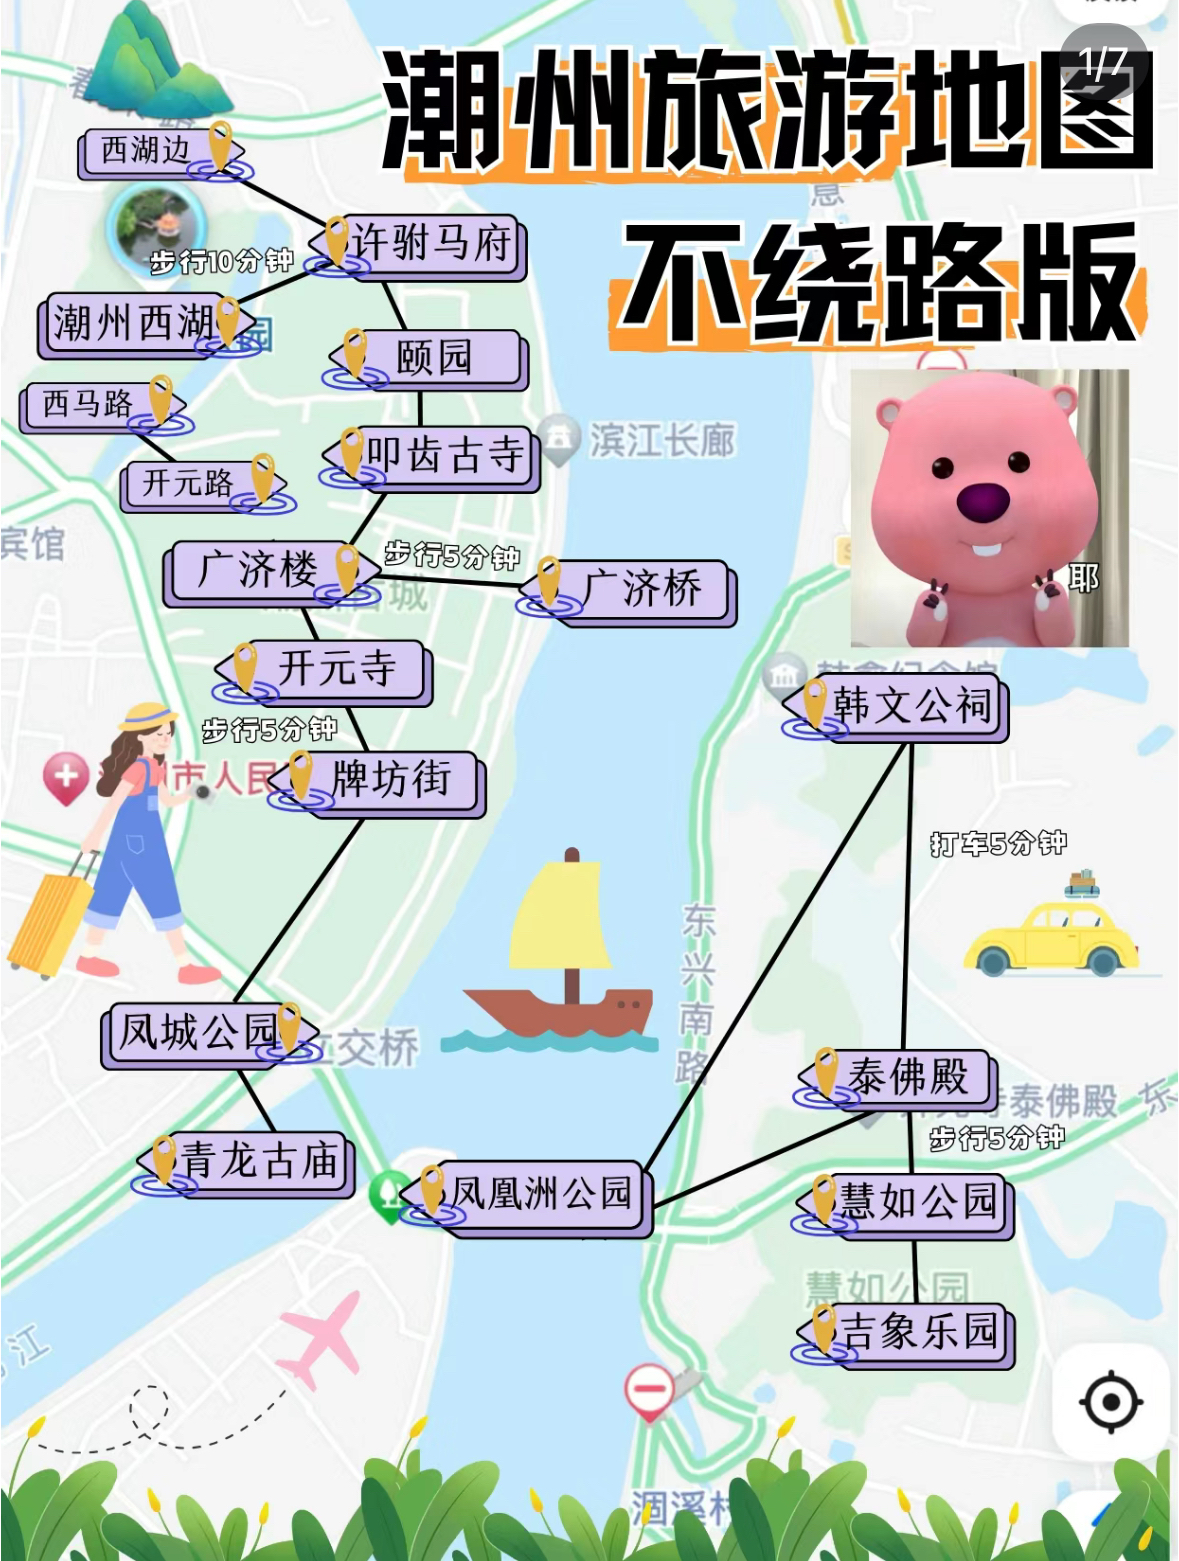 潮州旅游攻略!!本地人手绘版地图(附攻略)